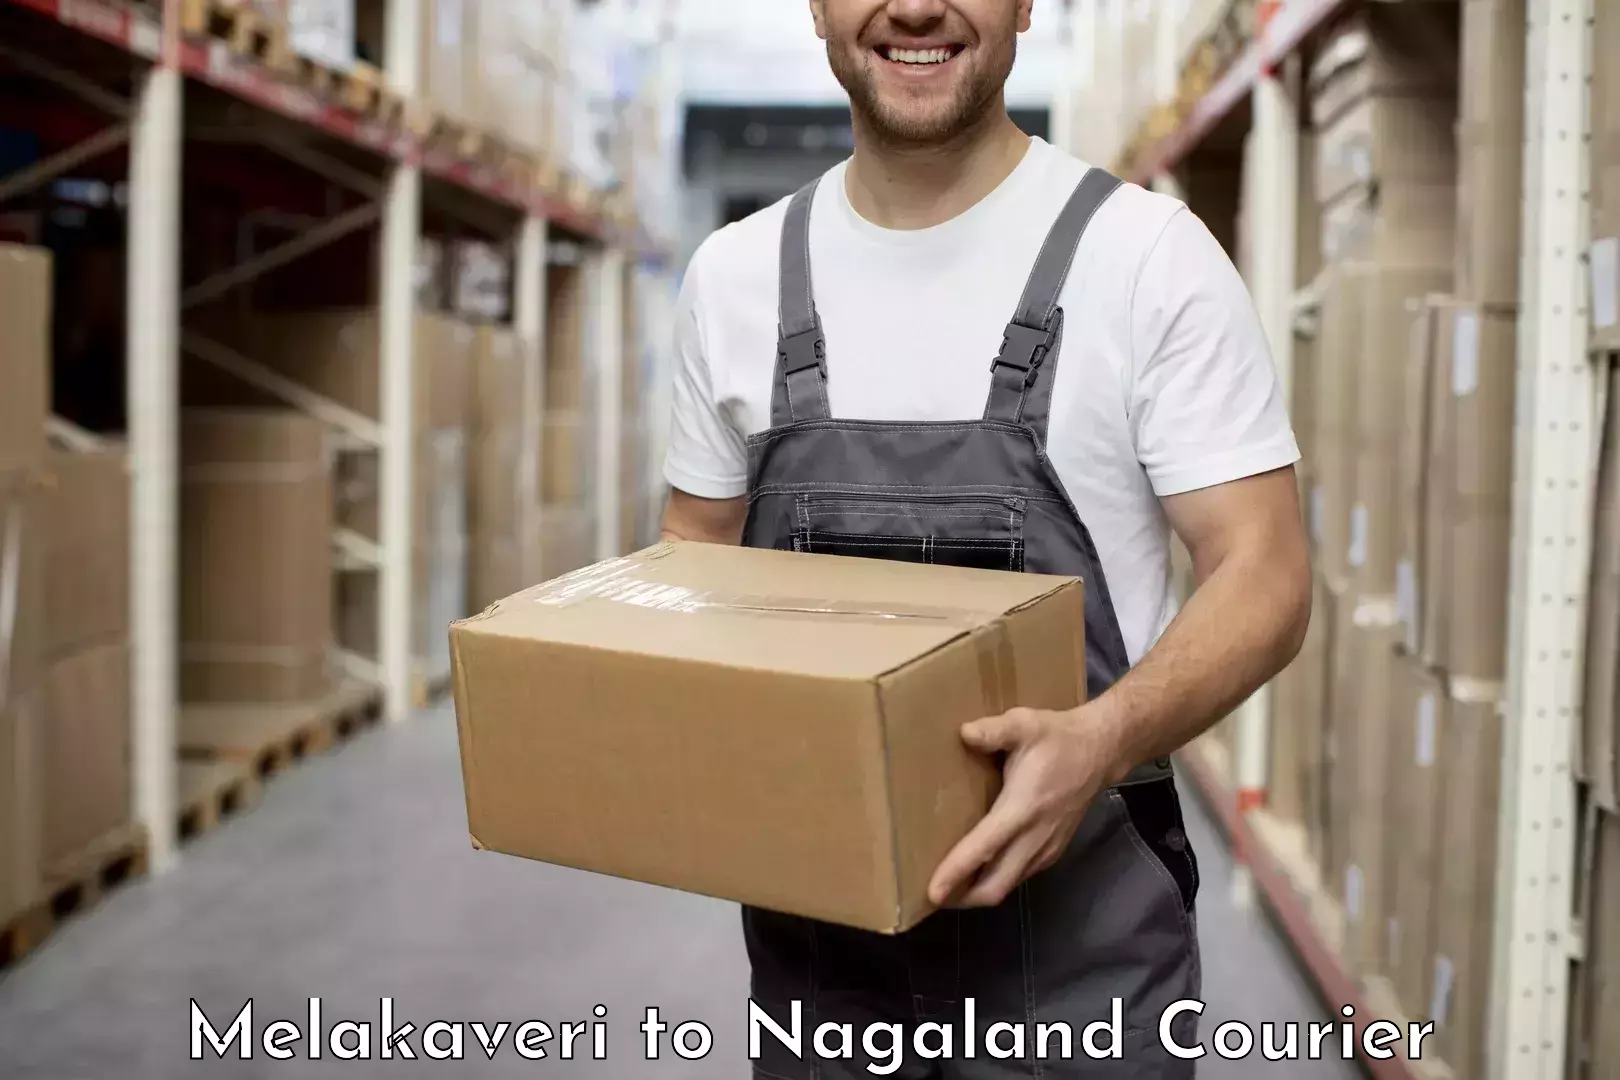 Custom courier packaging Melakaveri to Nagaland